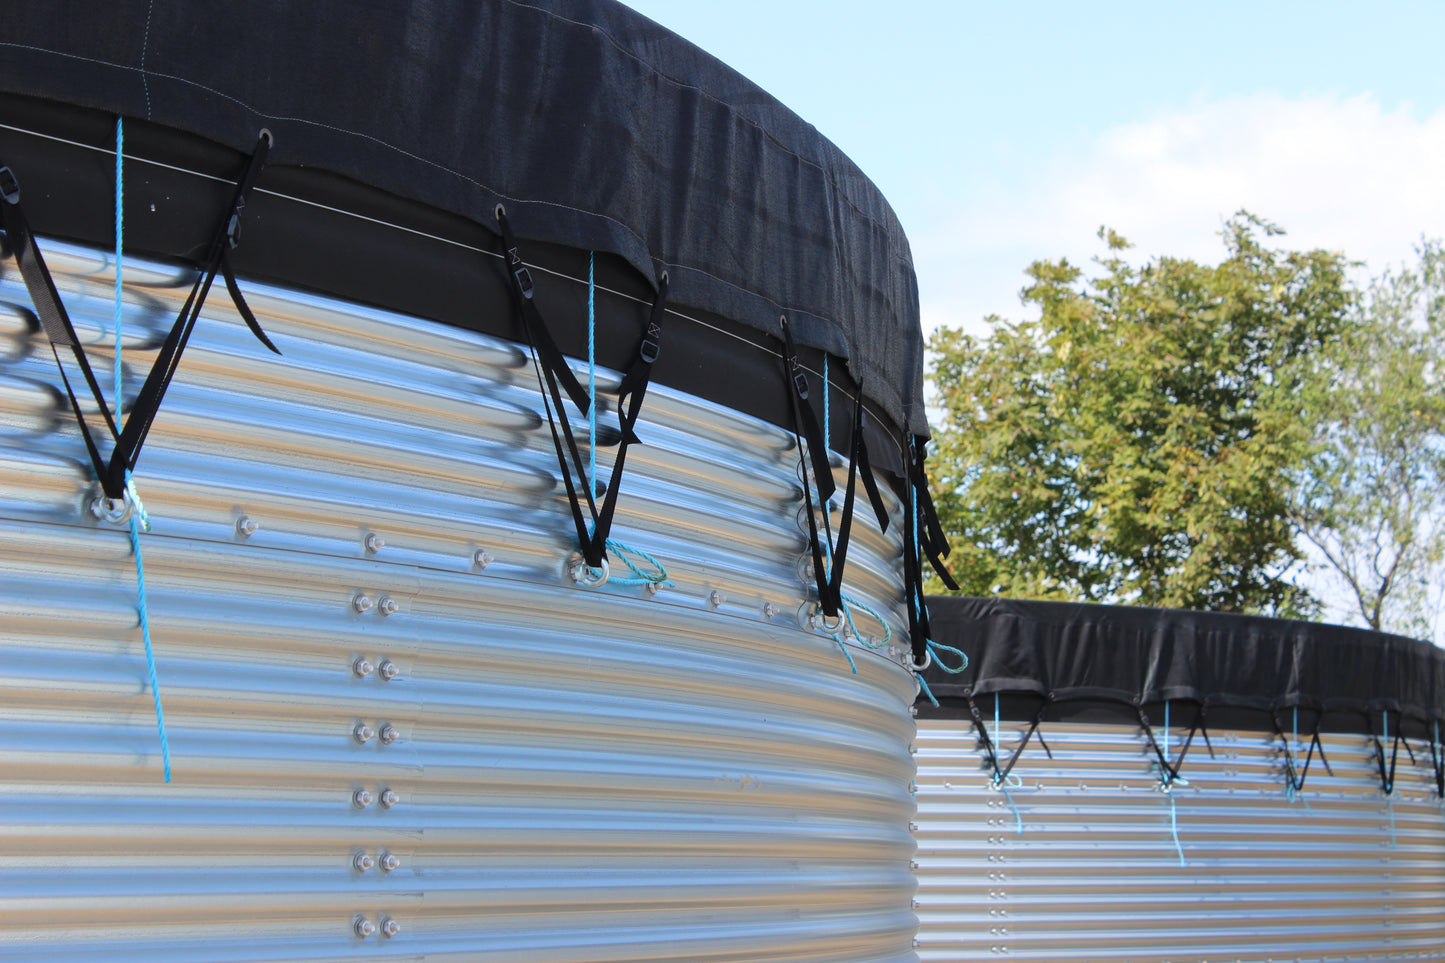 48,000 litre Galvanised Steel Water Tank